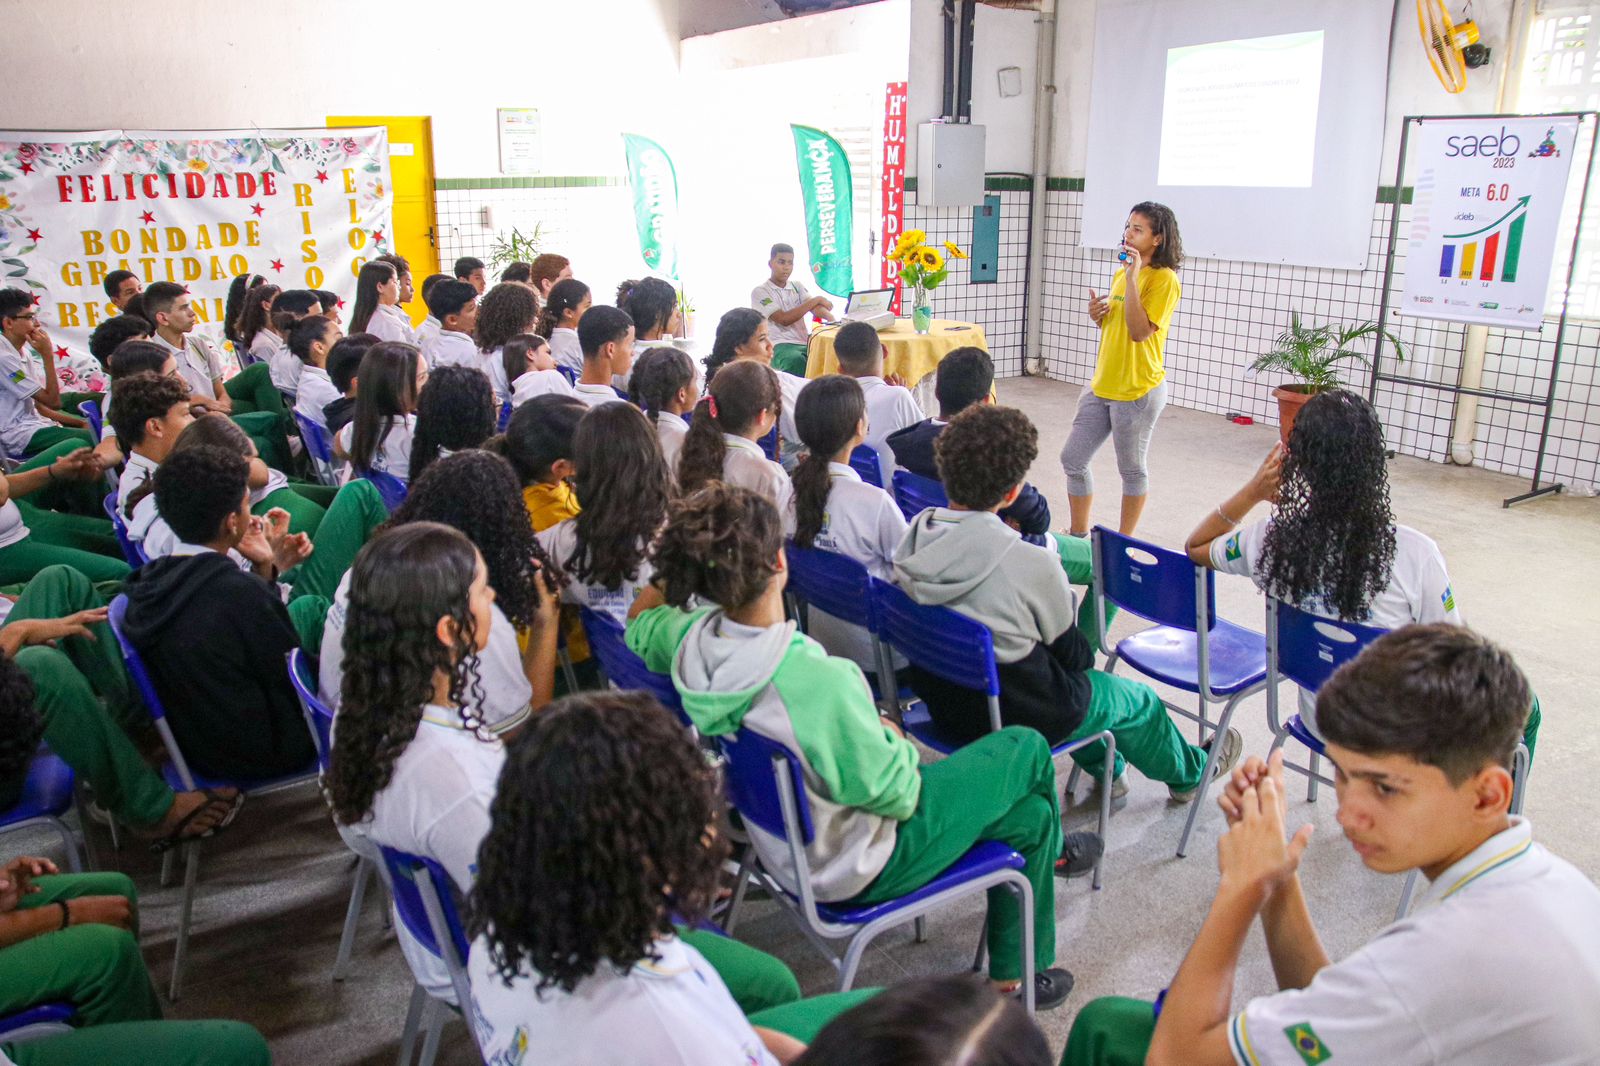 Atos - Igarapé Grande,Maranhão: Estutande de Educação física Bacharel -  fazendo anamnese básico para alunos iniciantes e como personal trainer (MA)